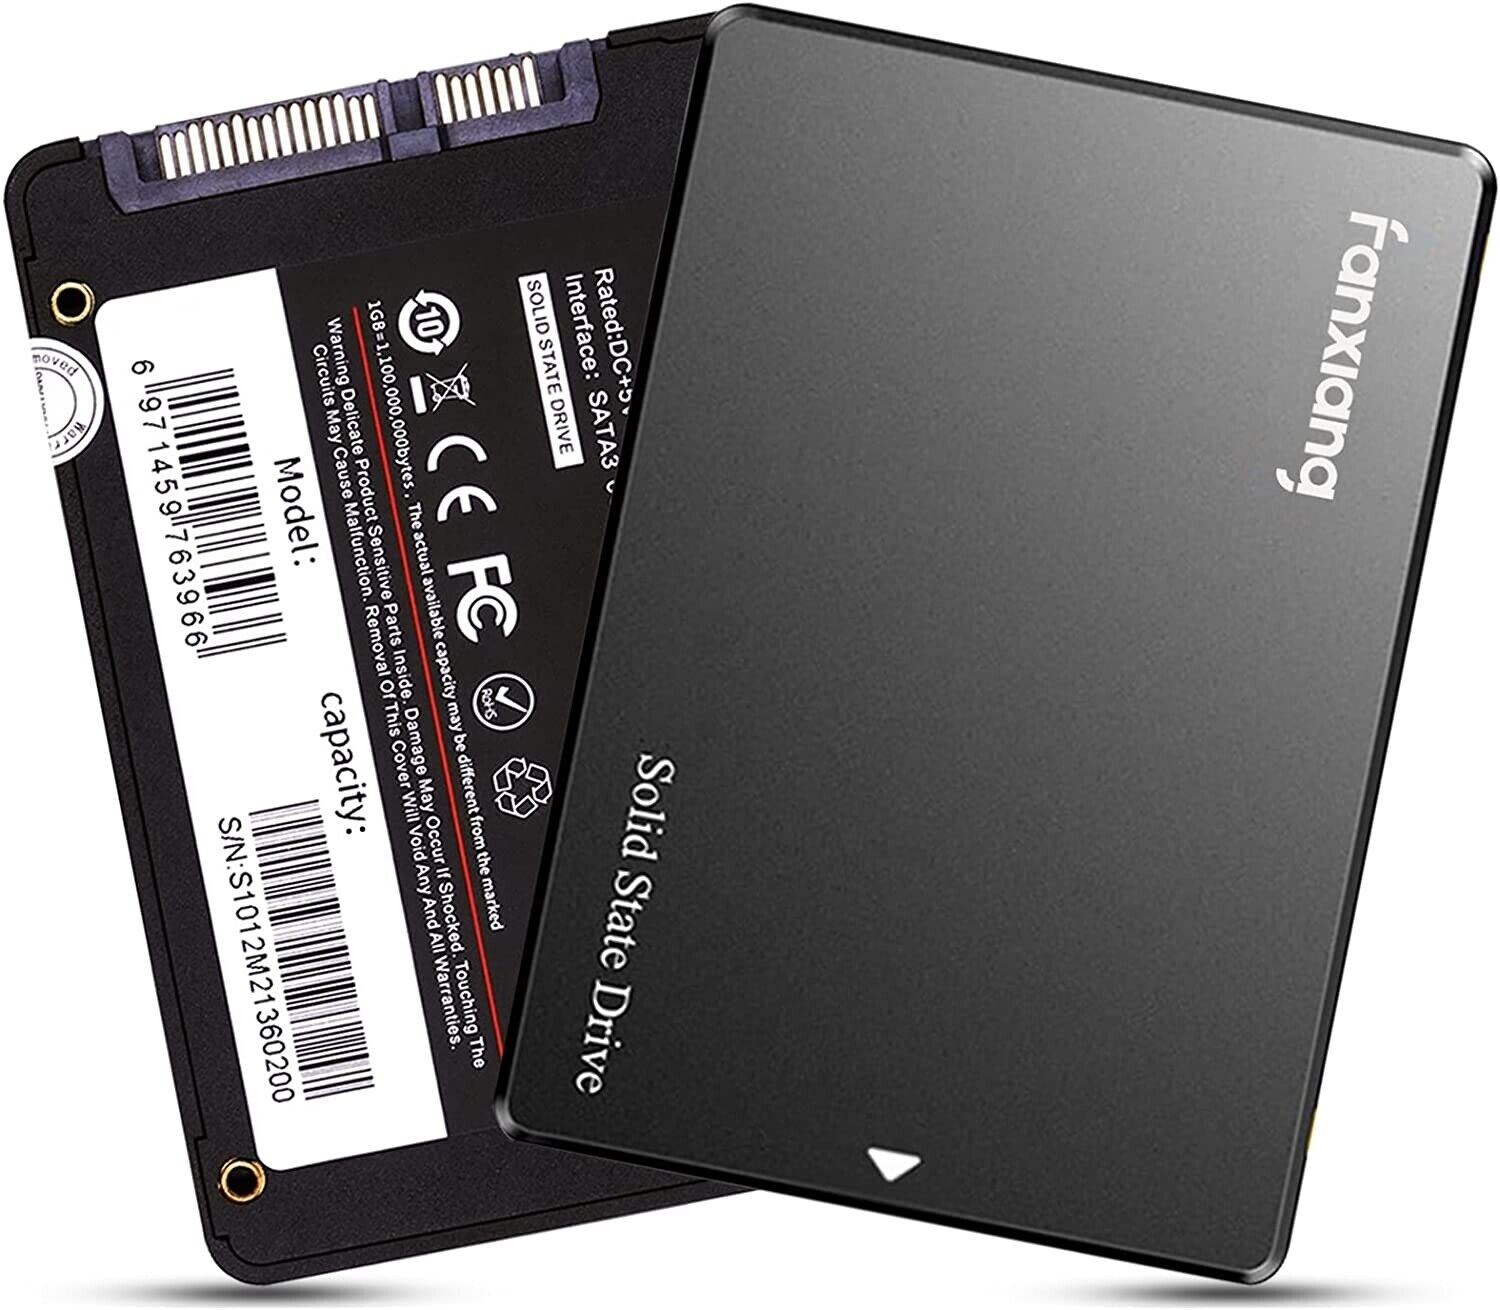 fanxiang 1TB 512GB 256GB SSD 2.5'' SATA III Internal Solid State Drive PC/MAC